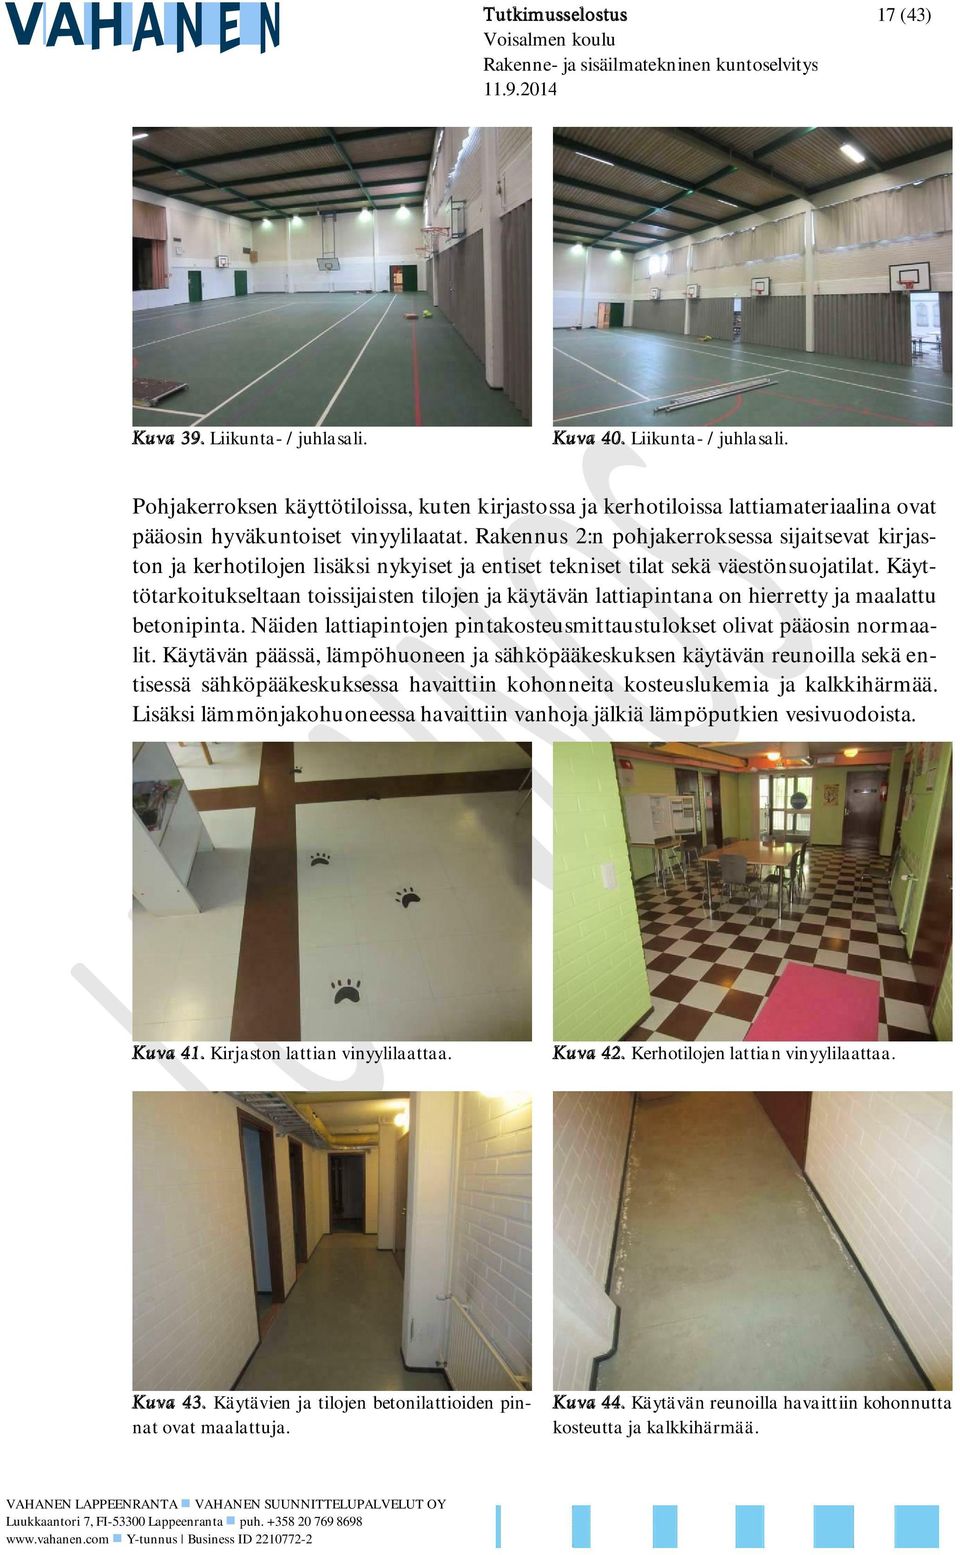 Käyttötarkoitukseltaan toissijaisten tilojen ja käytävän lattiapintana on hierretty ja maalattu betonipinta. Näiden lattiapintojen pintakosteusmittaustulokset olivat pääosin normaalit.